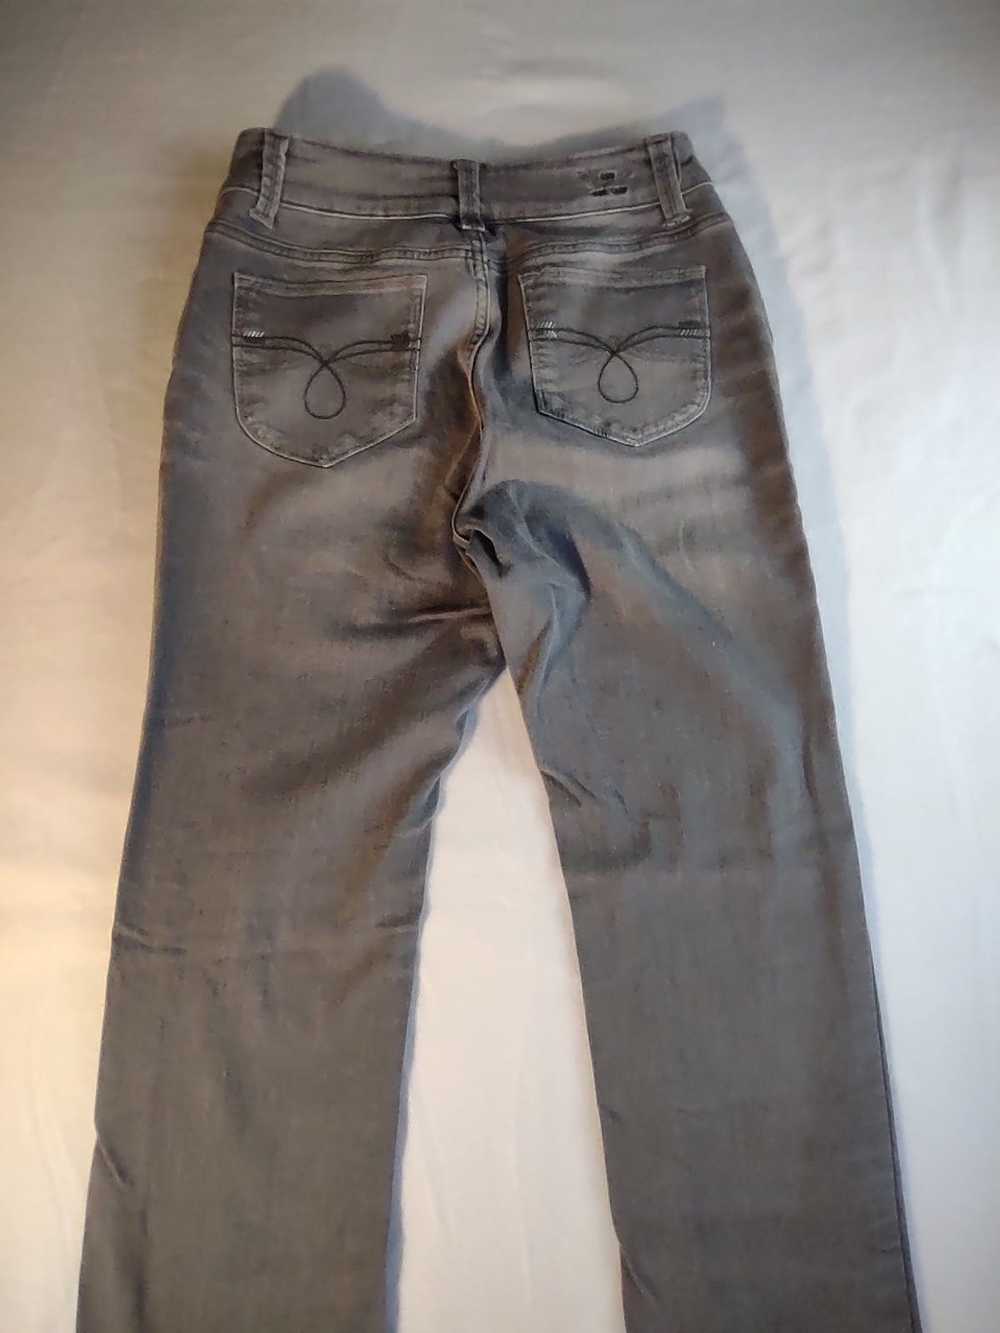 Lee Lee Perfect Fit Just Below Waist denim jeans … - image 4